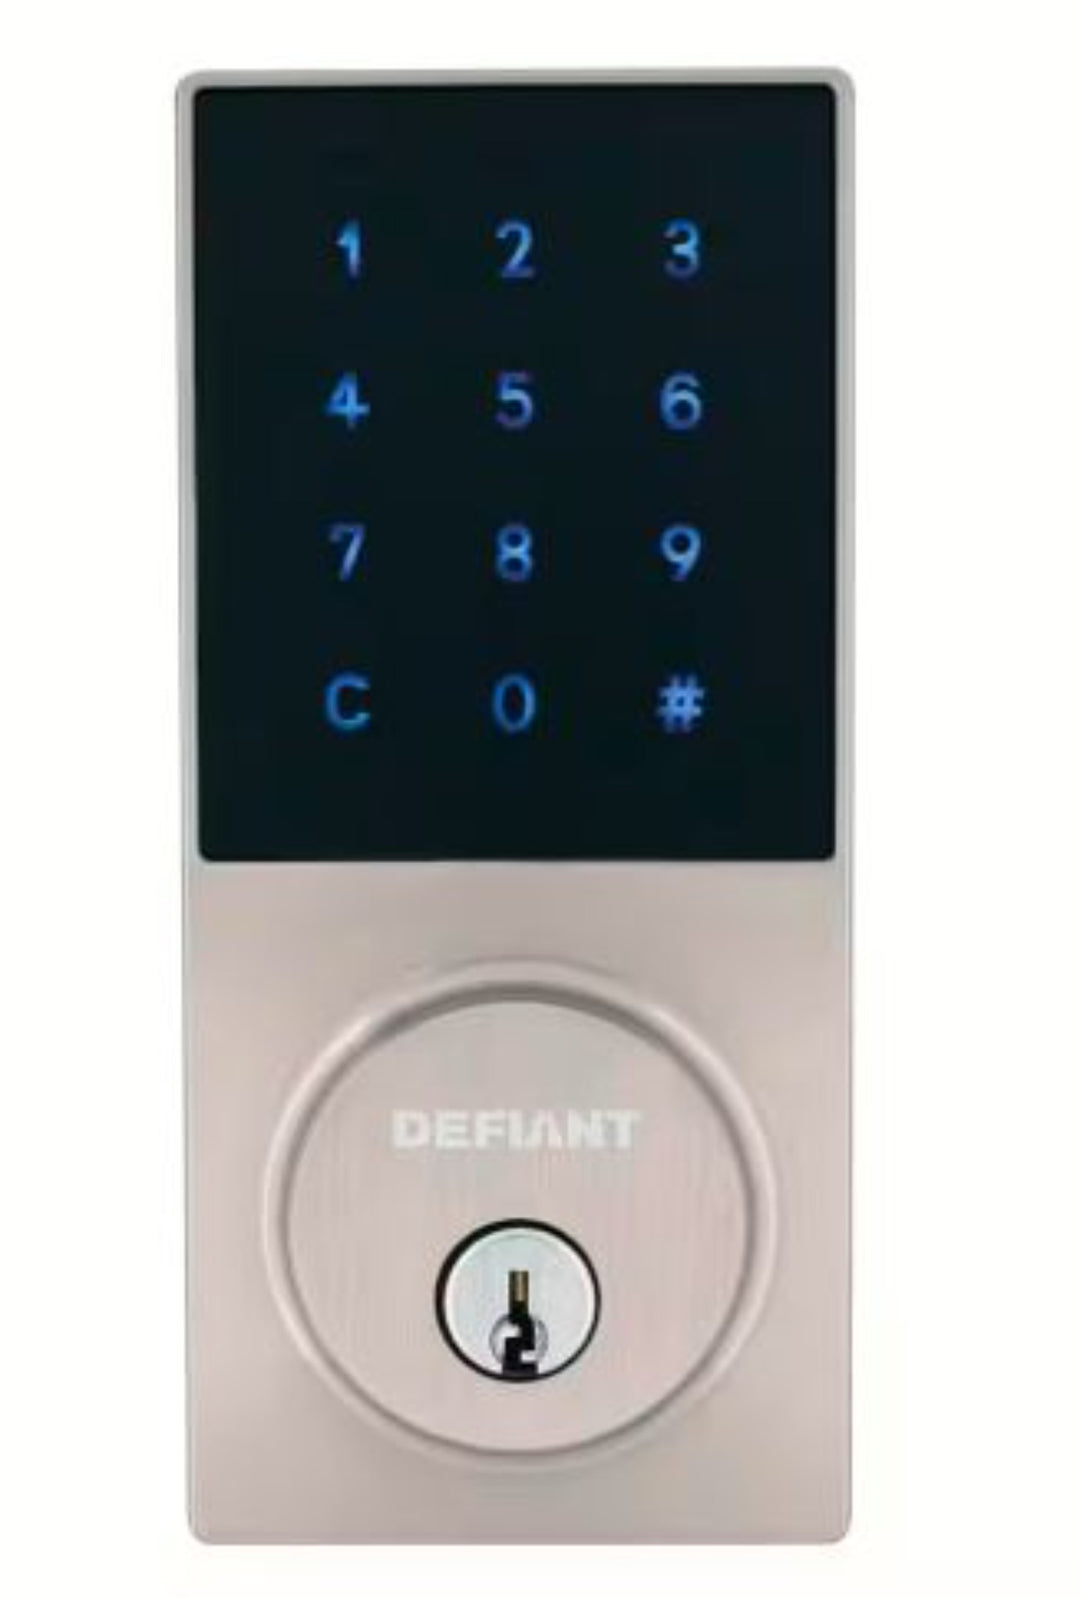 Defiant Slim Electronic Touchpad Deadbolt Door Lock - Home & Garden - Security - Locking mechanism - Electronic door lock